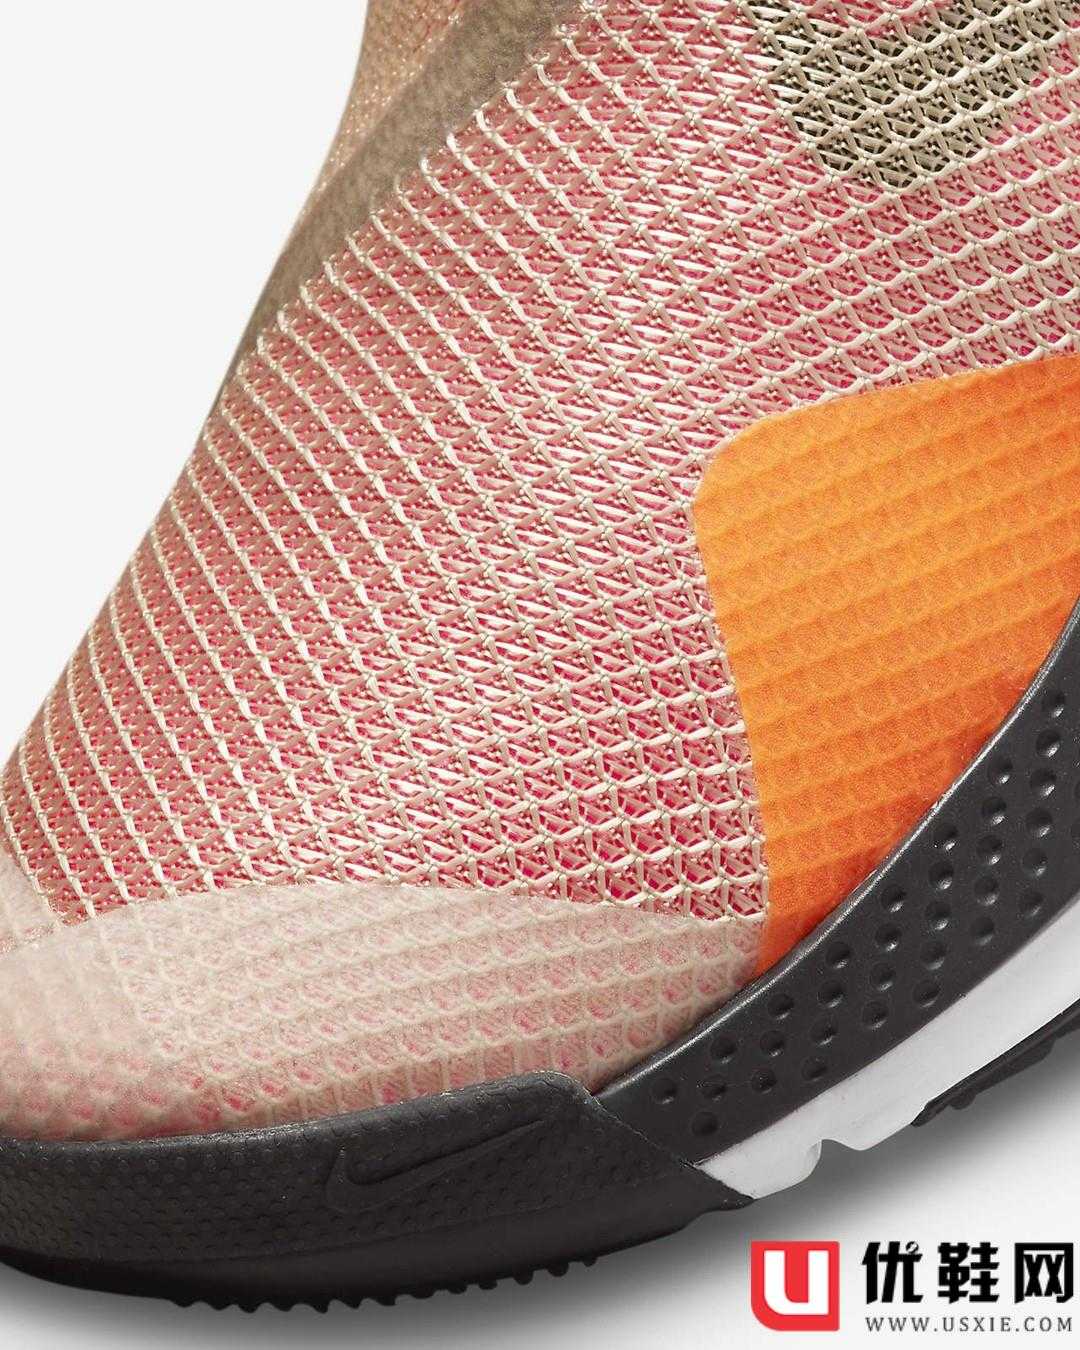 Nike,Go FlyEase,CW5883-600  低配「自动系带」刷新你穿鞋的方式！Nike 懒人神鞋终于来了！